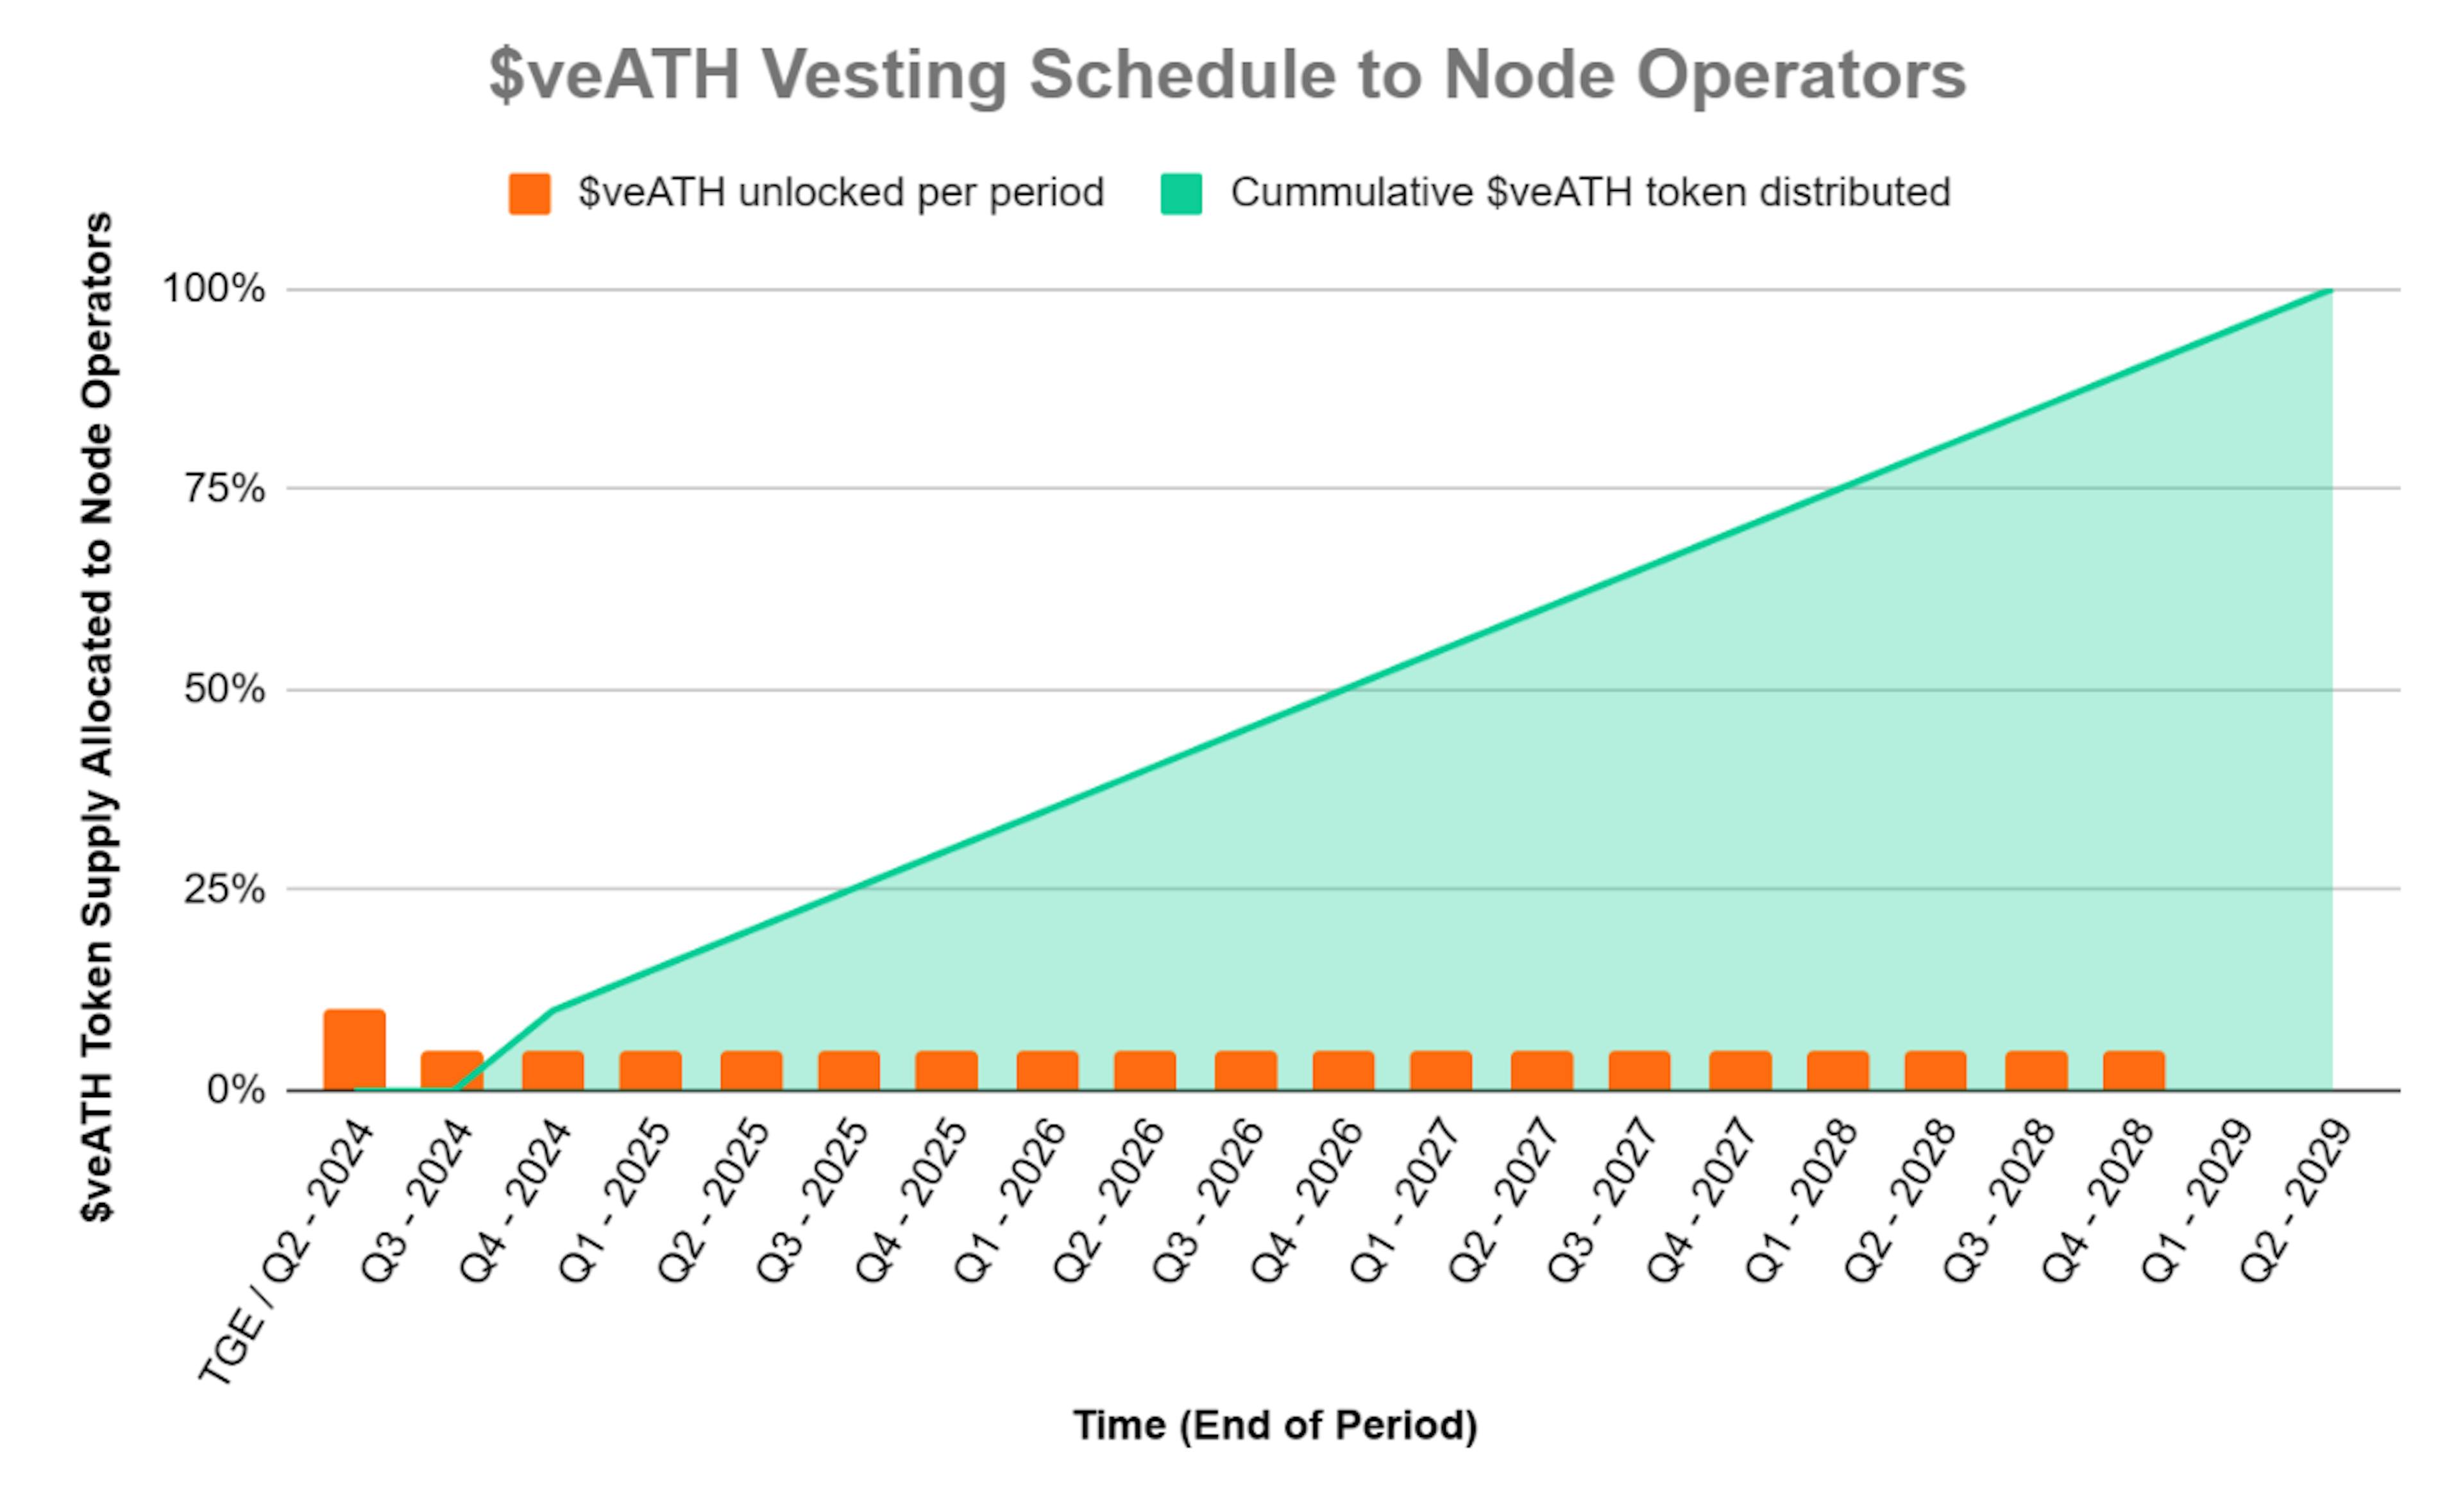 veATH vesting schedule to node operators